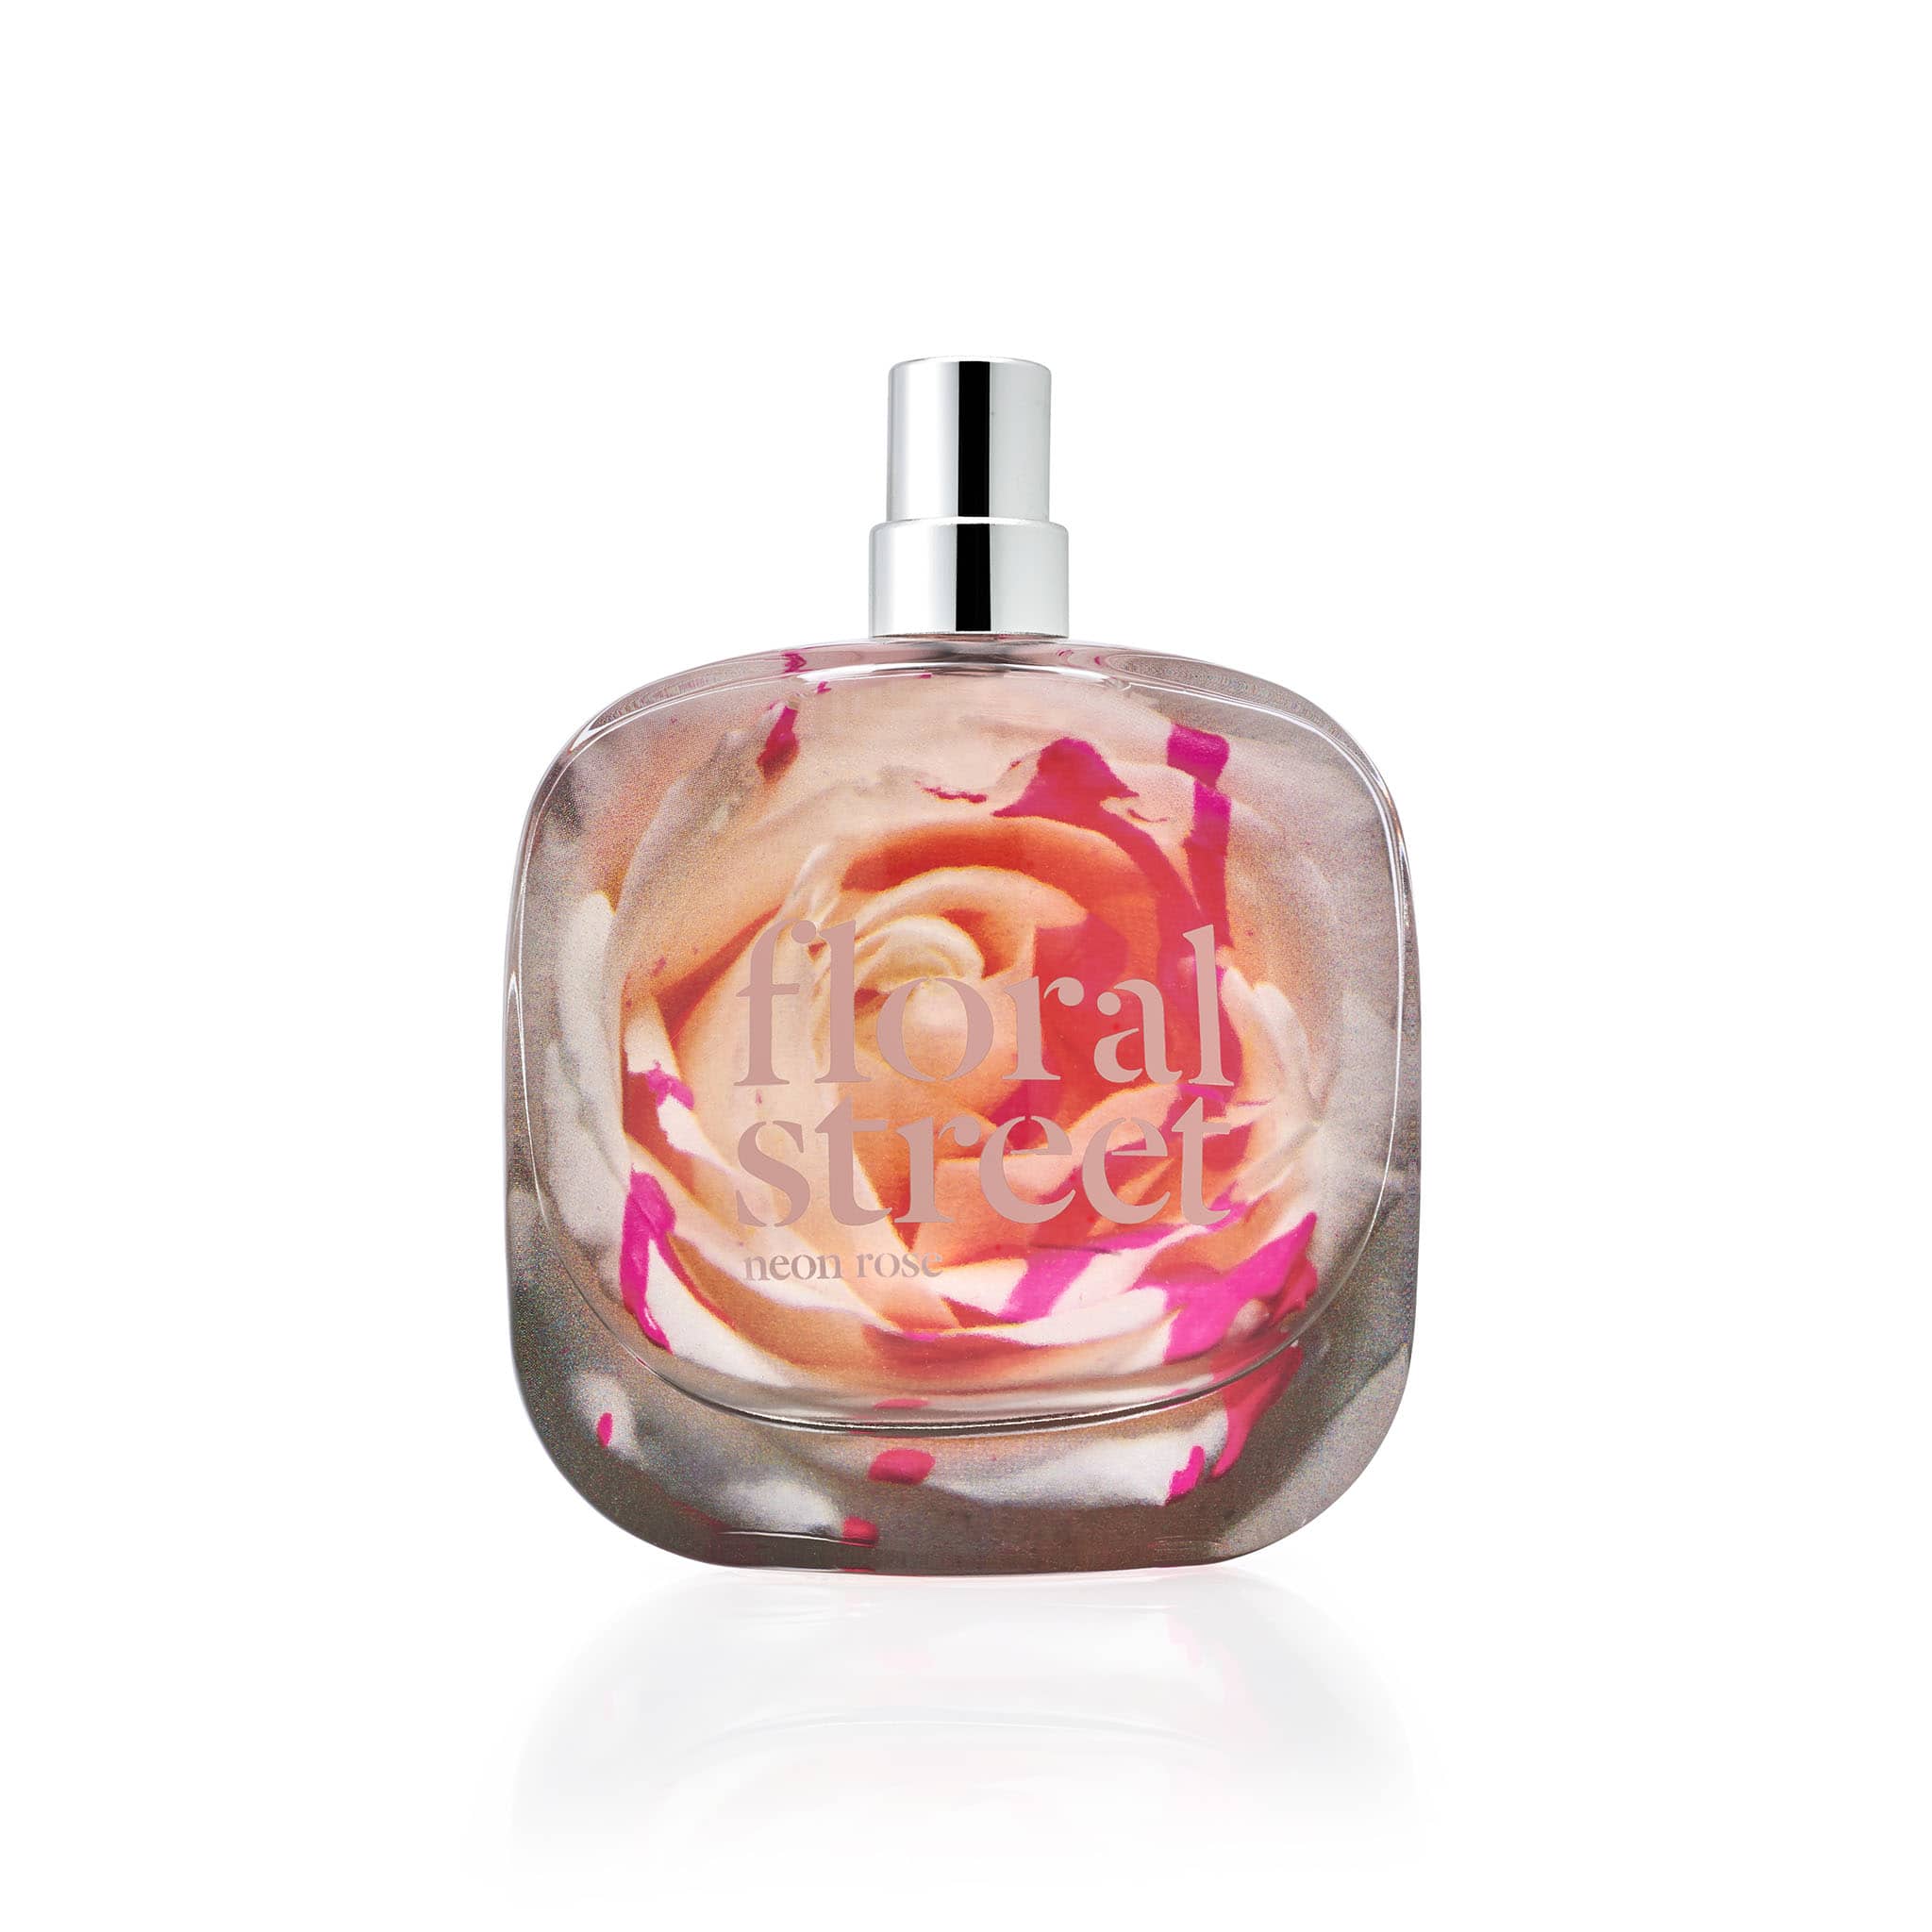 Street – Neon Floral Street Floral De Rose Eau Parfum US - Fragrances